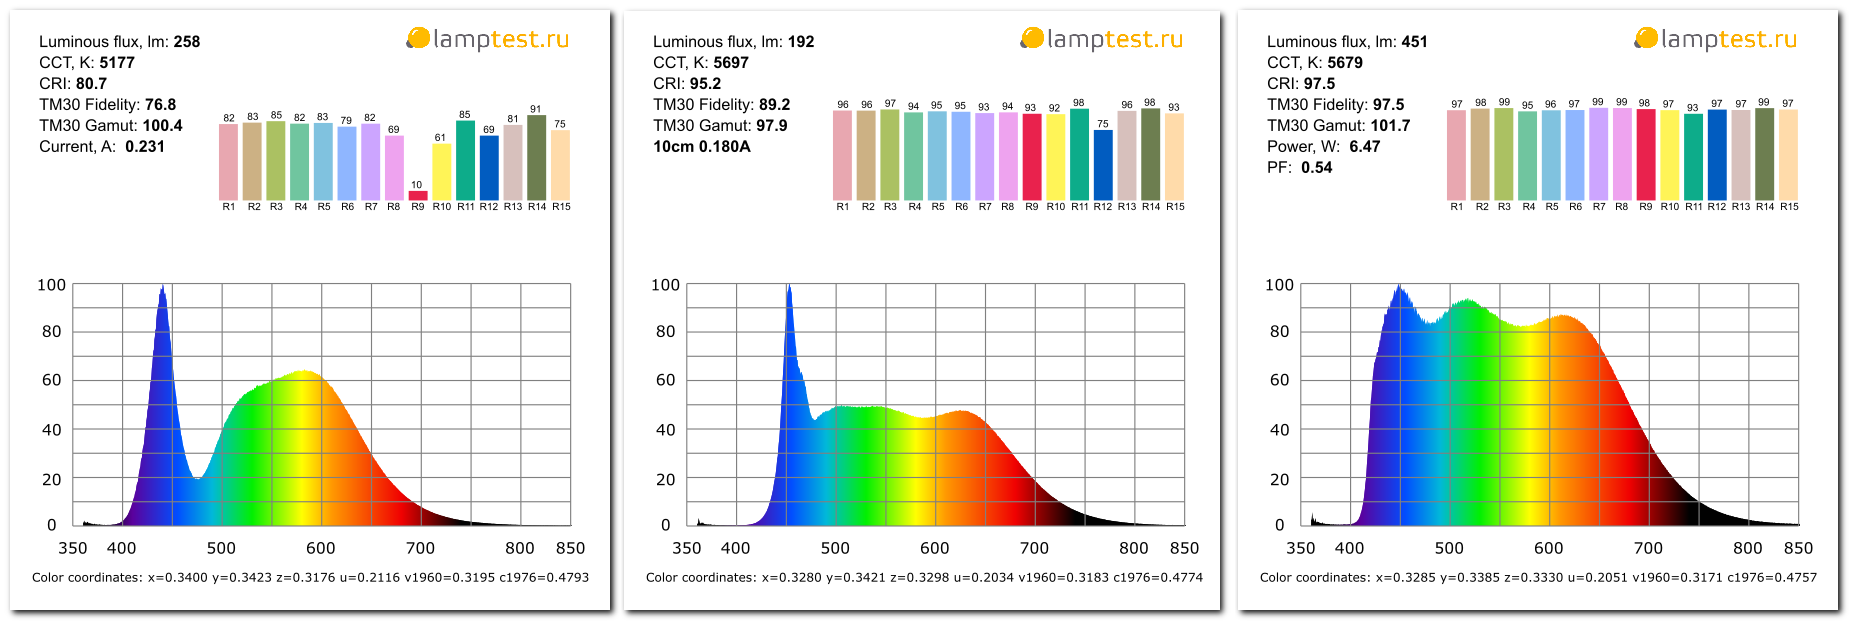 Первые в мире серийные лампы с солнечным спектром - 2